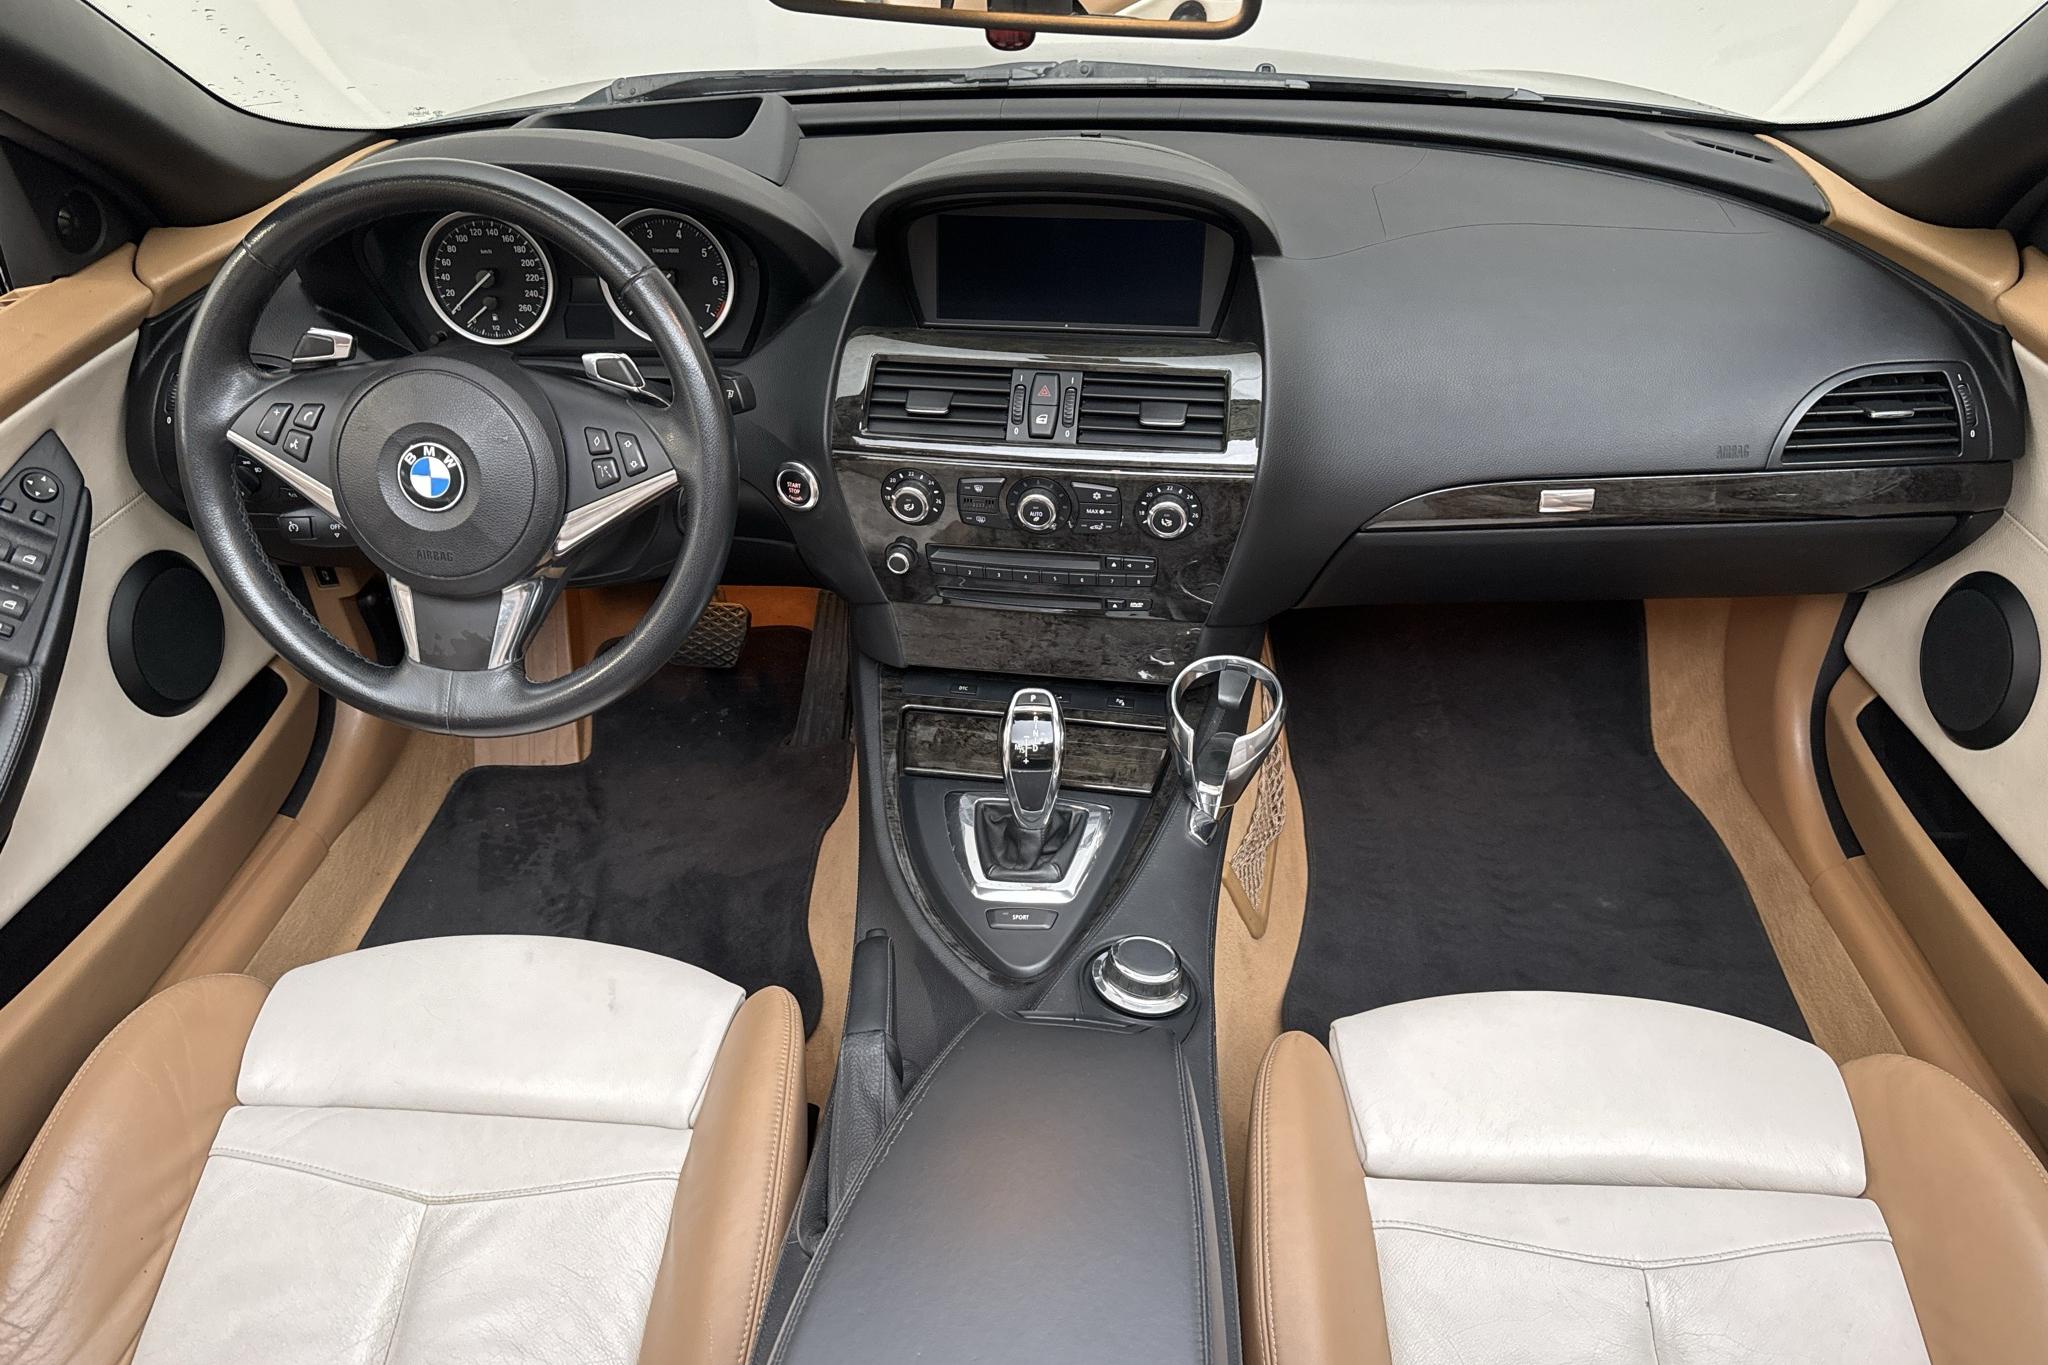 BMW 650i Cabriolet, E63 (367hk) - 91 280 km - Automatic - Dark Blue - 2009